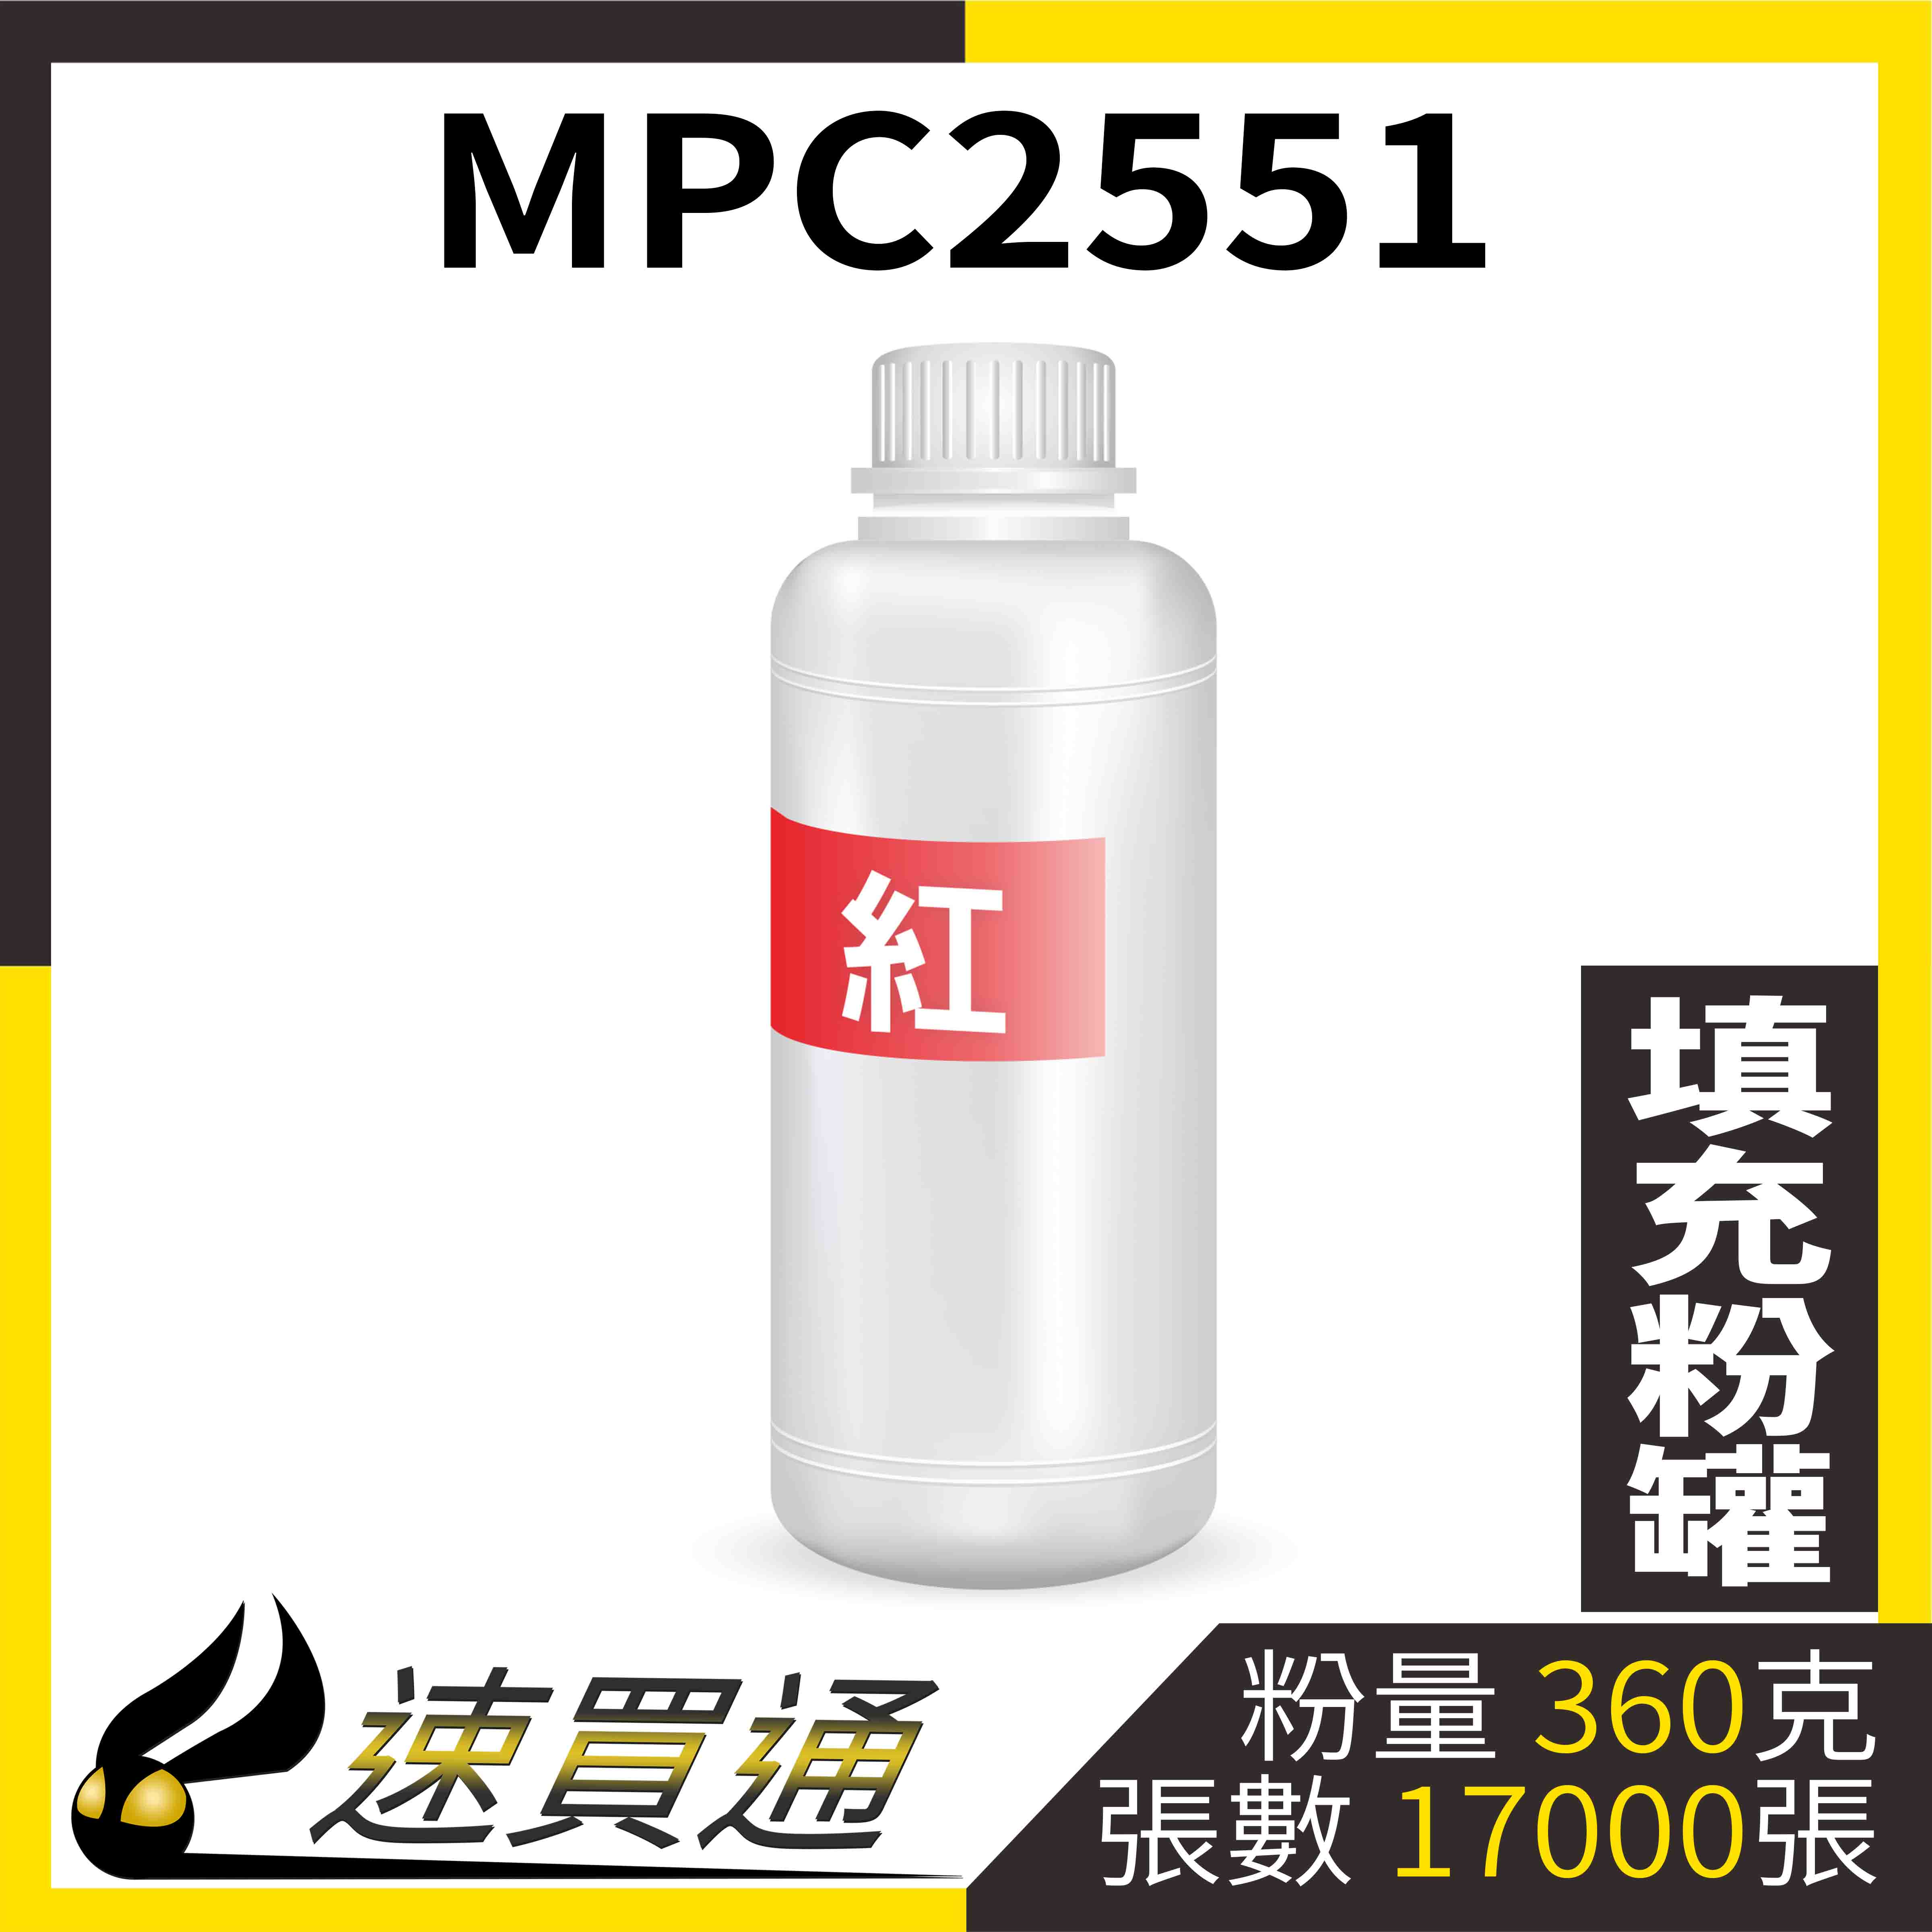 【速買通】RICOH MPC2551 紅 填充式碳粉罐